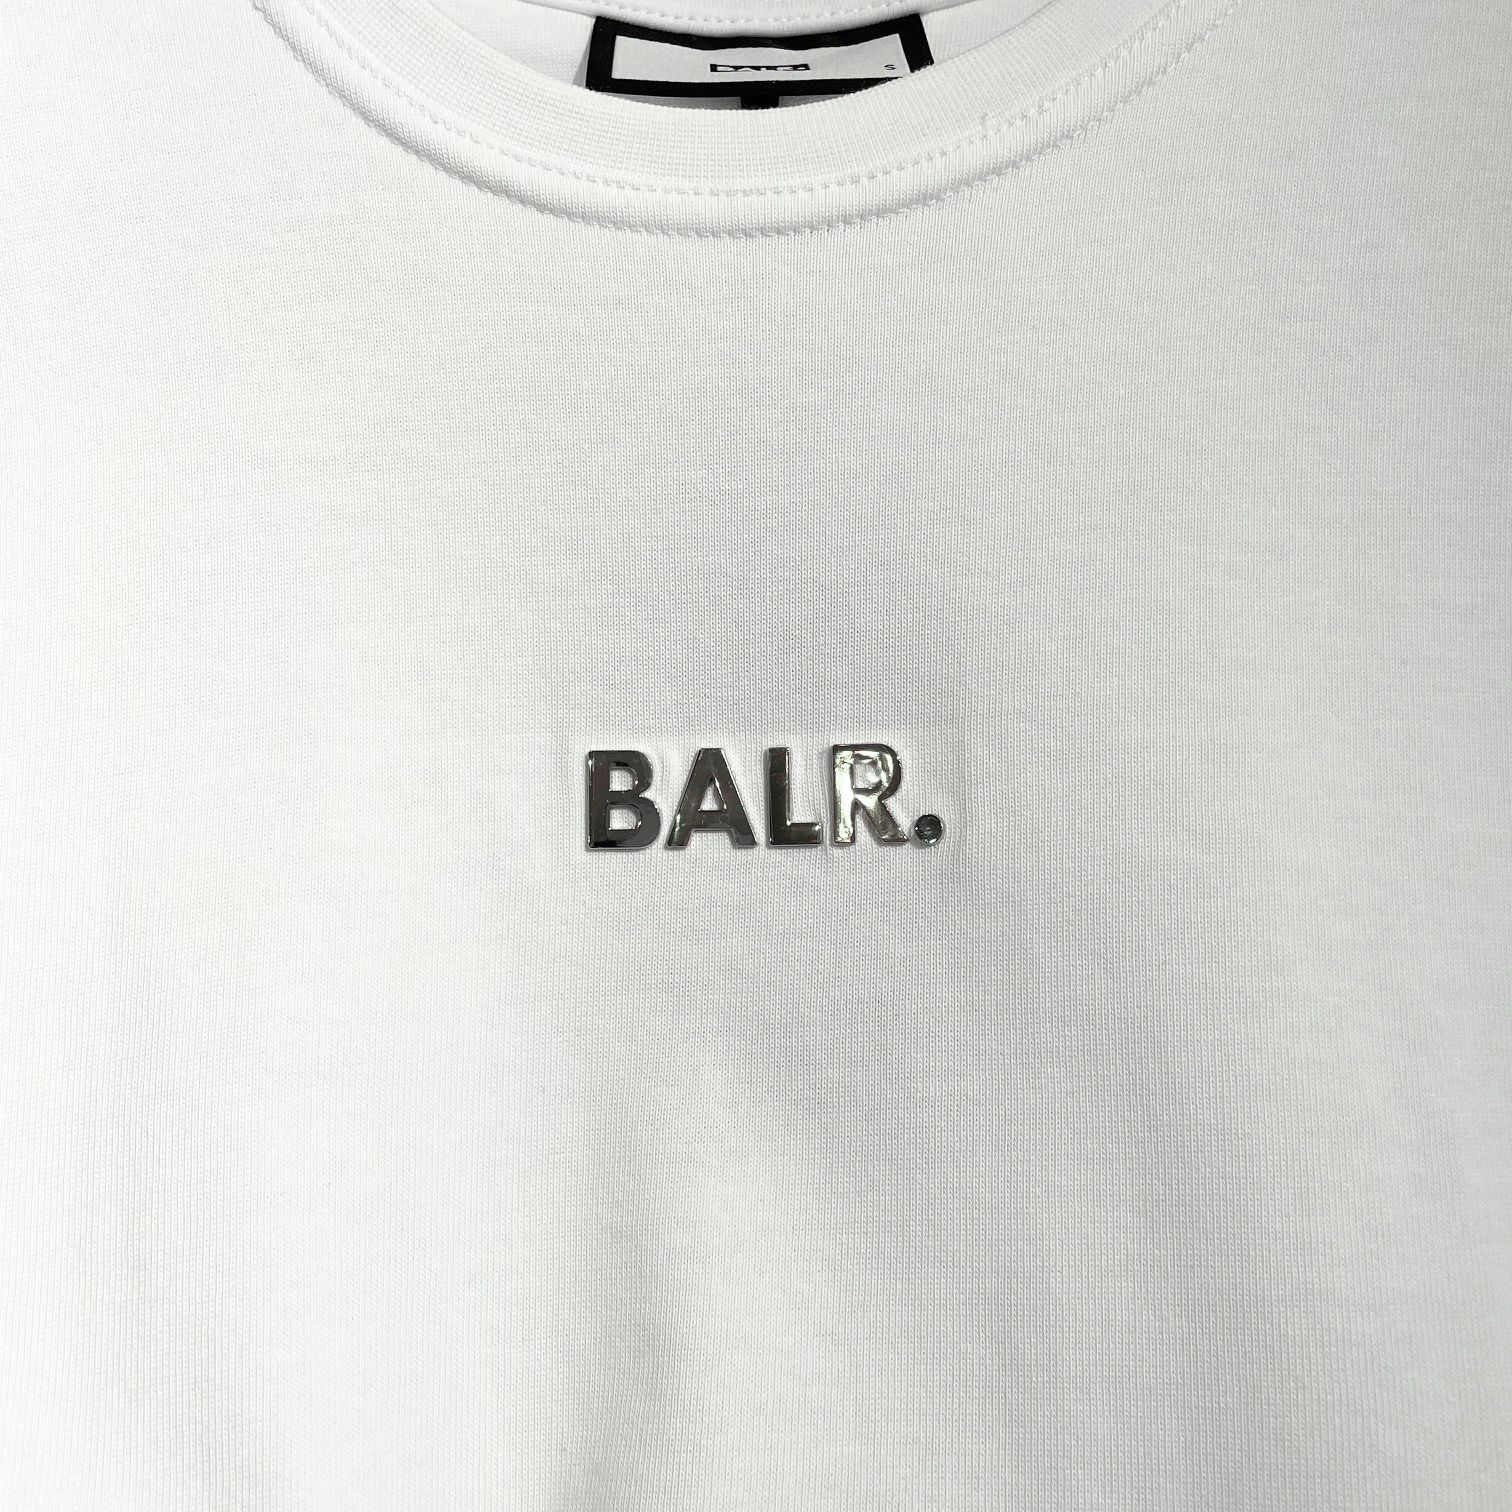 夏におすすめのTシャツ、BALR.のシンプルに素材感、着心地に拘った 